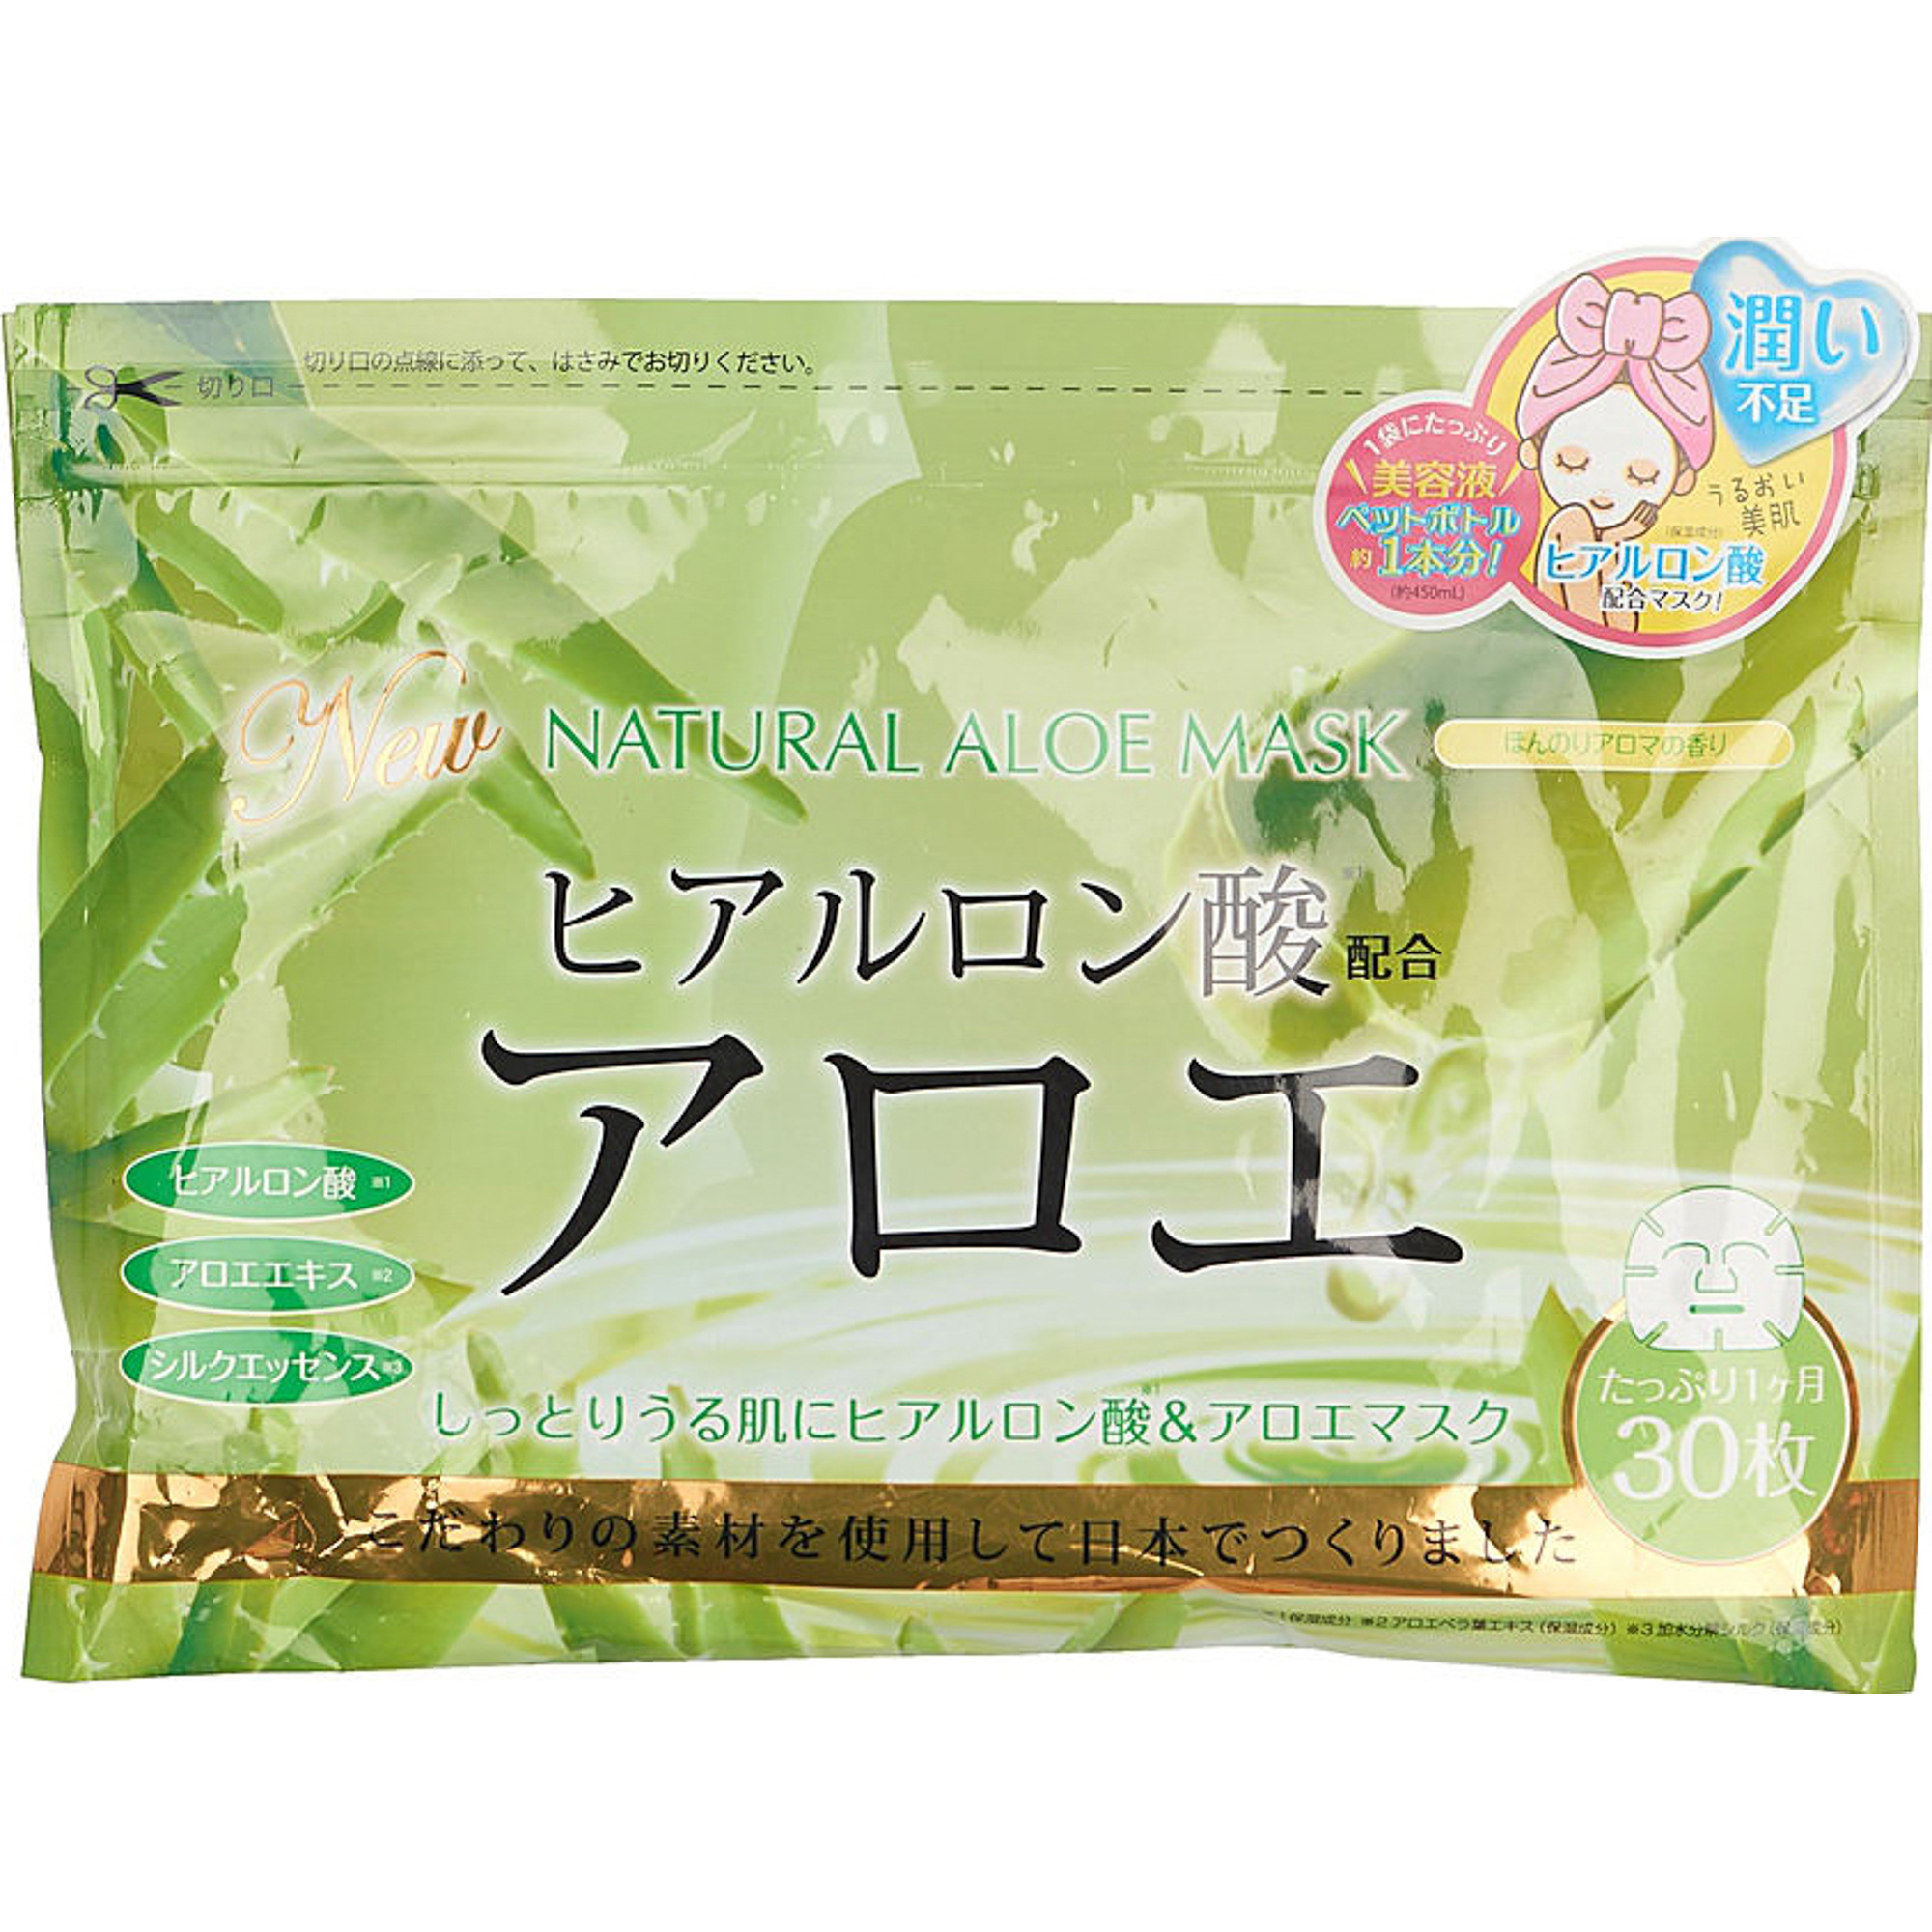 Тканевая маска Japan Gals С экстрактом алоэ 30 шт маска перчатки для рук bioaqua с экстрактом авокадо 15 мл